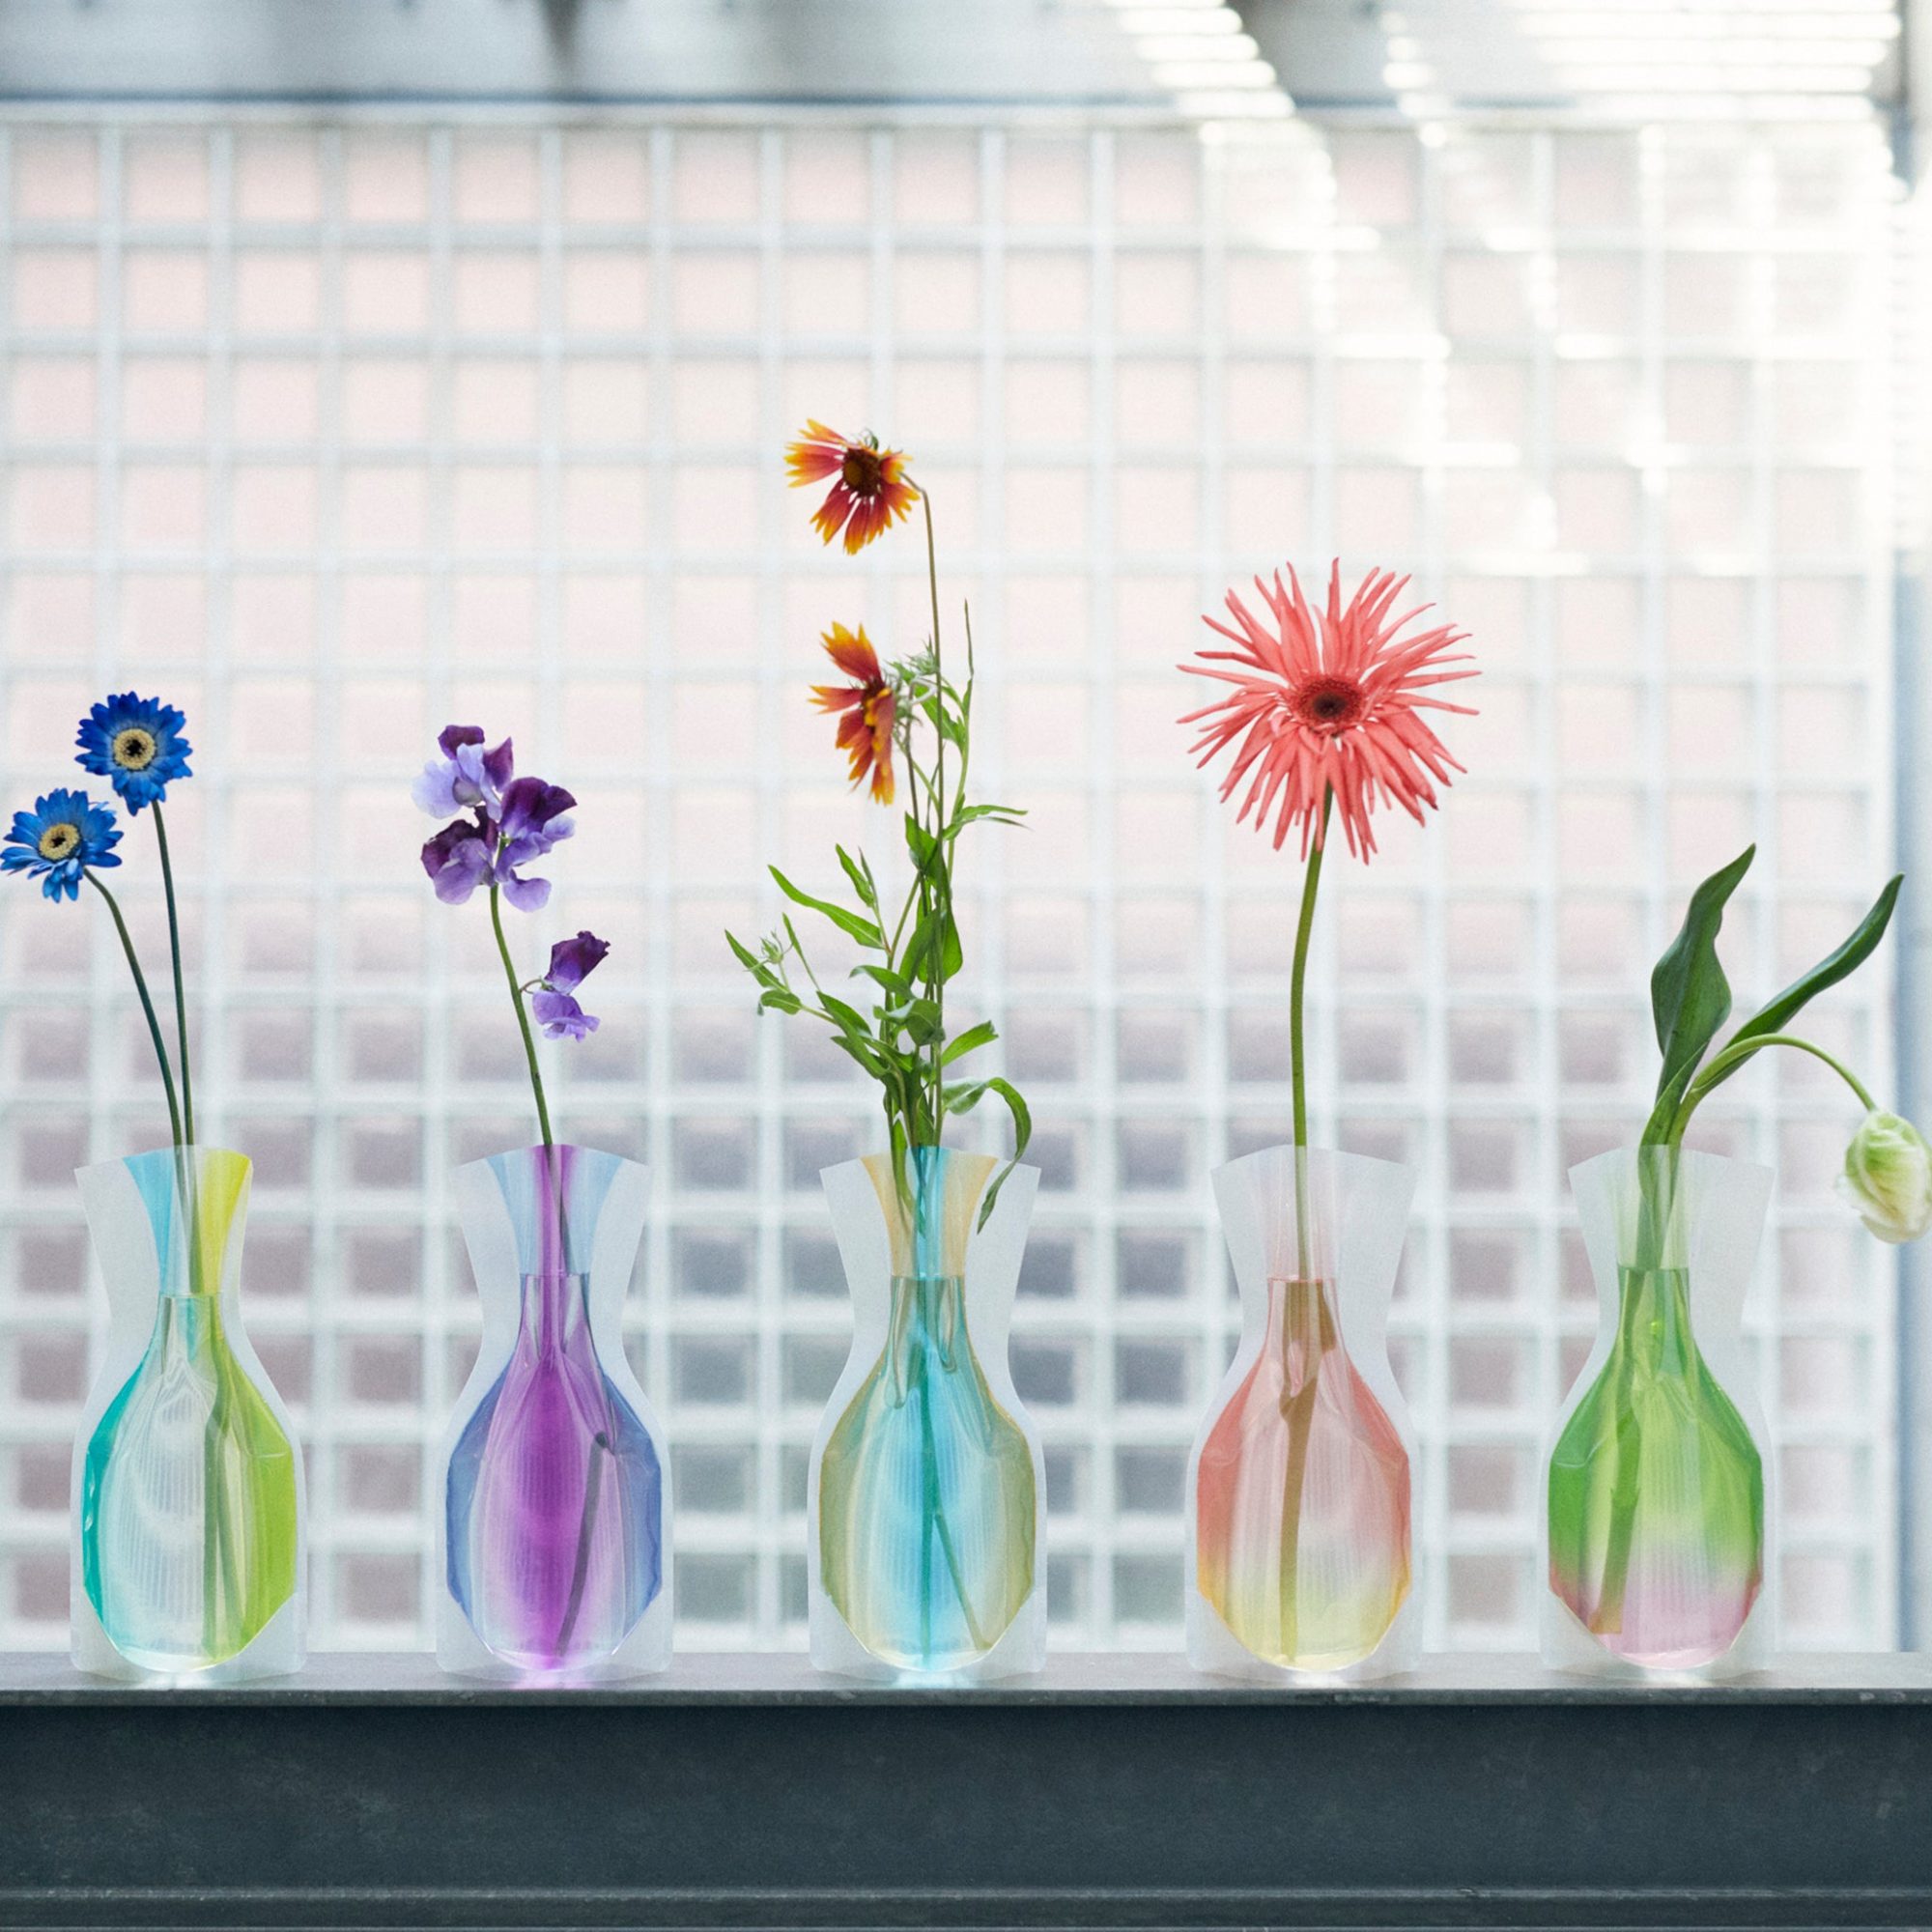 D-BROS Flower Vase Fair | 京都・河原町にある雑貨店 アンジェの 